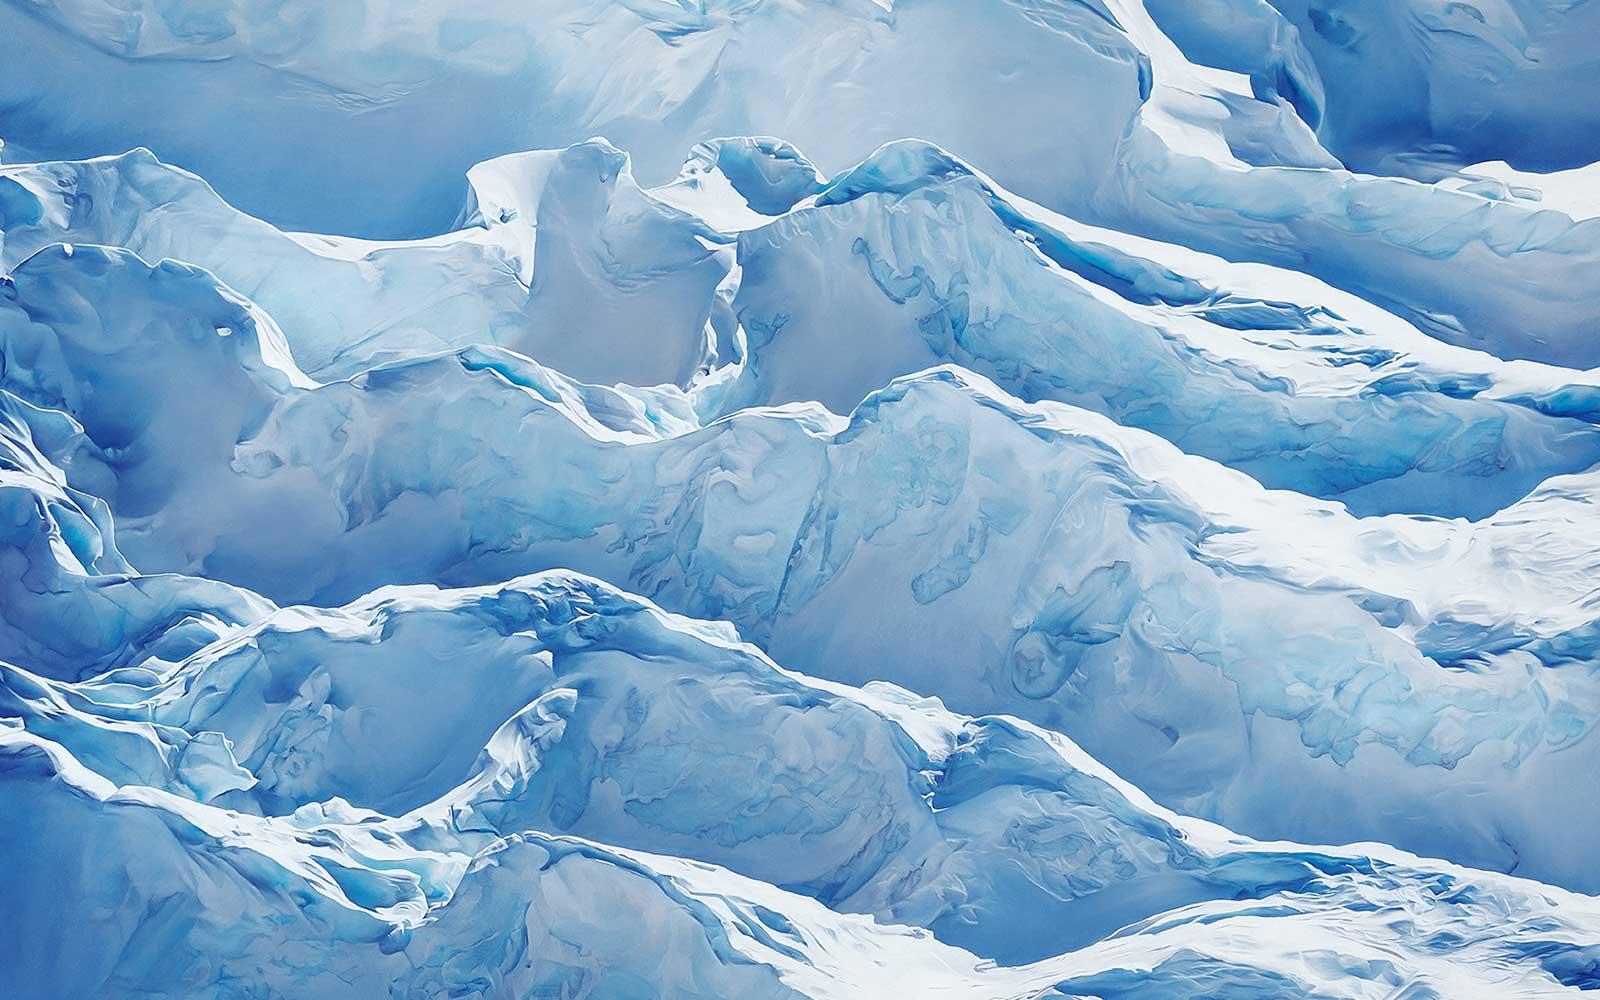 Zaria Forman, Sermeq Kajalleq, Greenland, 69° 47' 31.092"N 49° 47' 31.7076"W, April 29th, 2017, 2018. Soft pastel on paper. 68 x 102 in.image